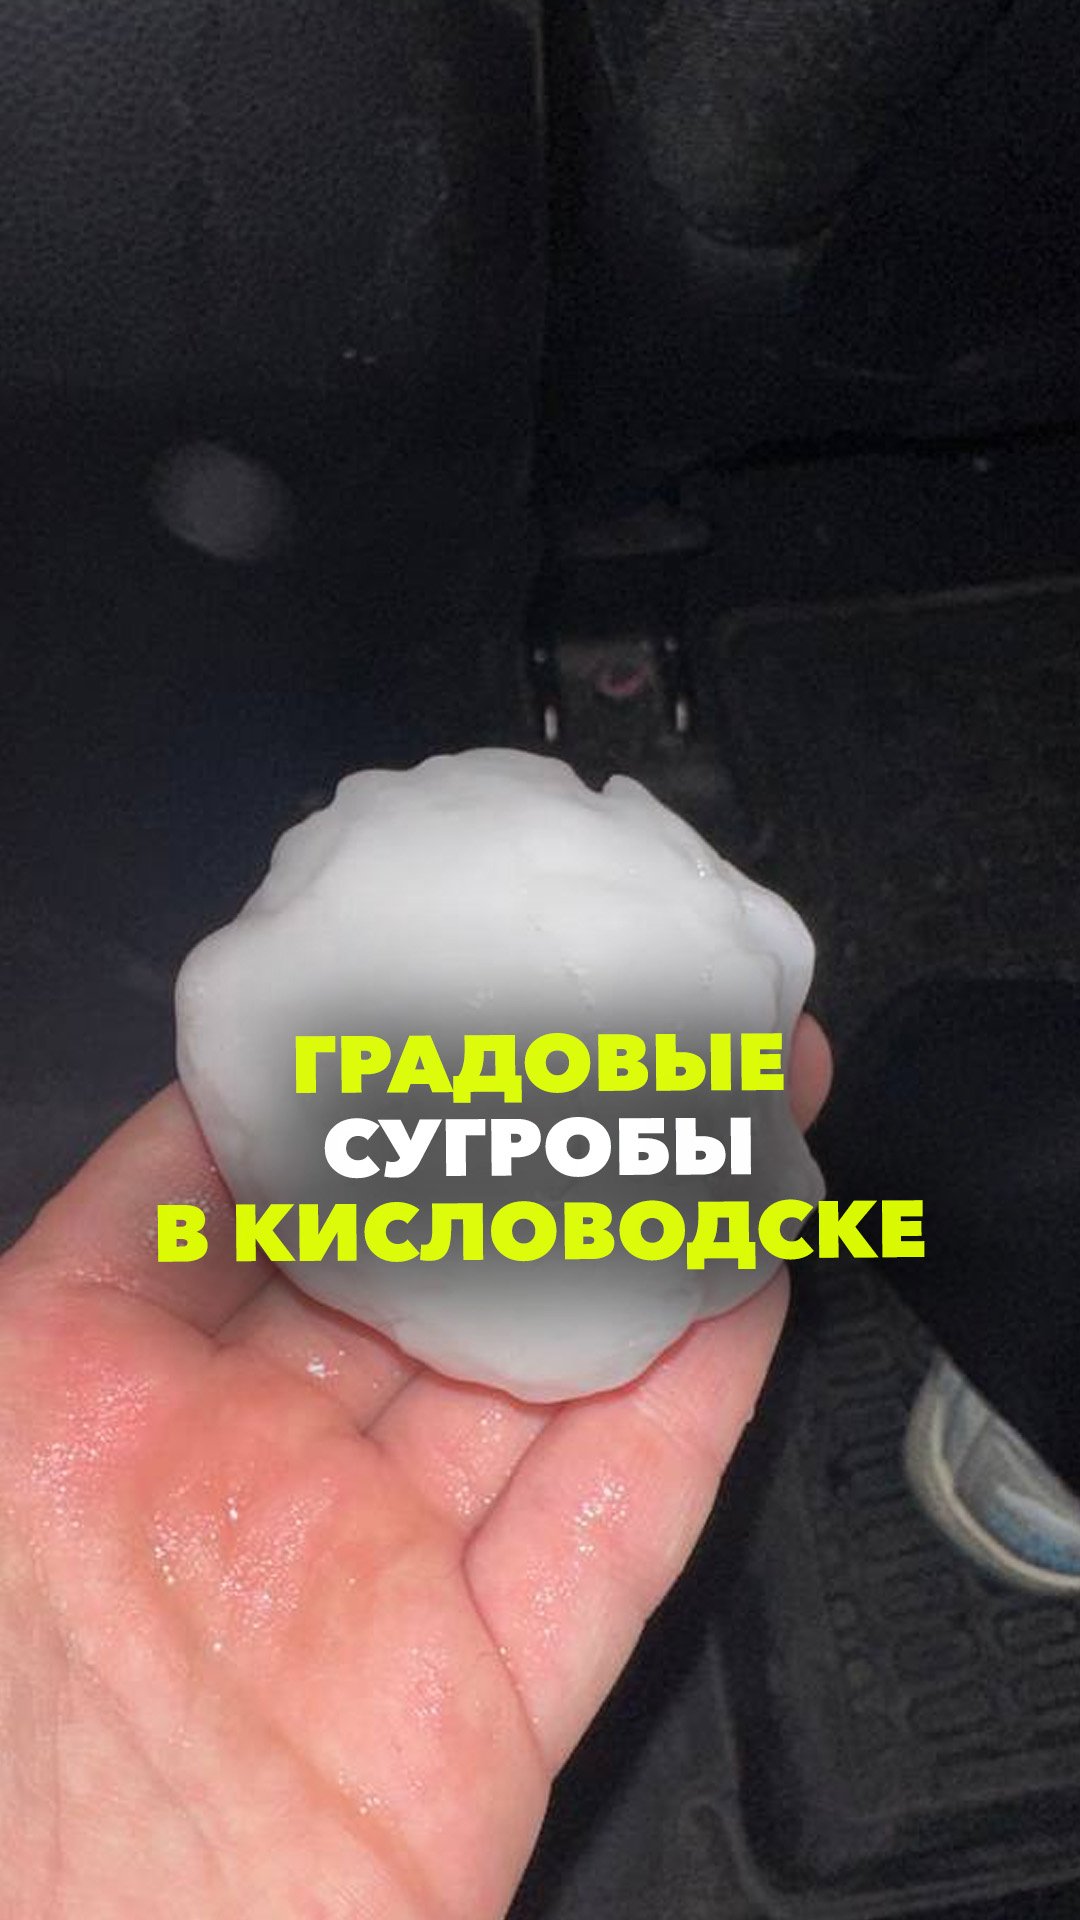 Град с размером яблока, ливень и ураганный ветер: жуткая непогода обрушилась на Кисловодск